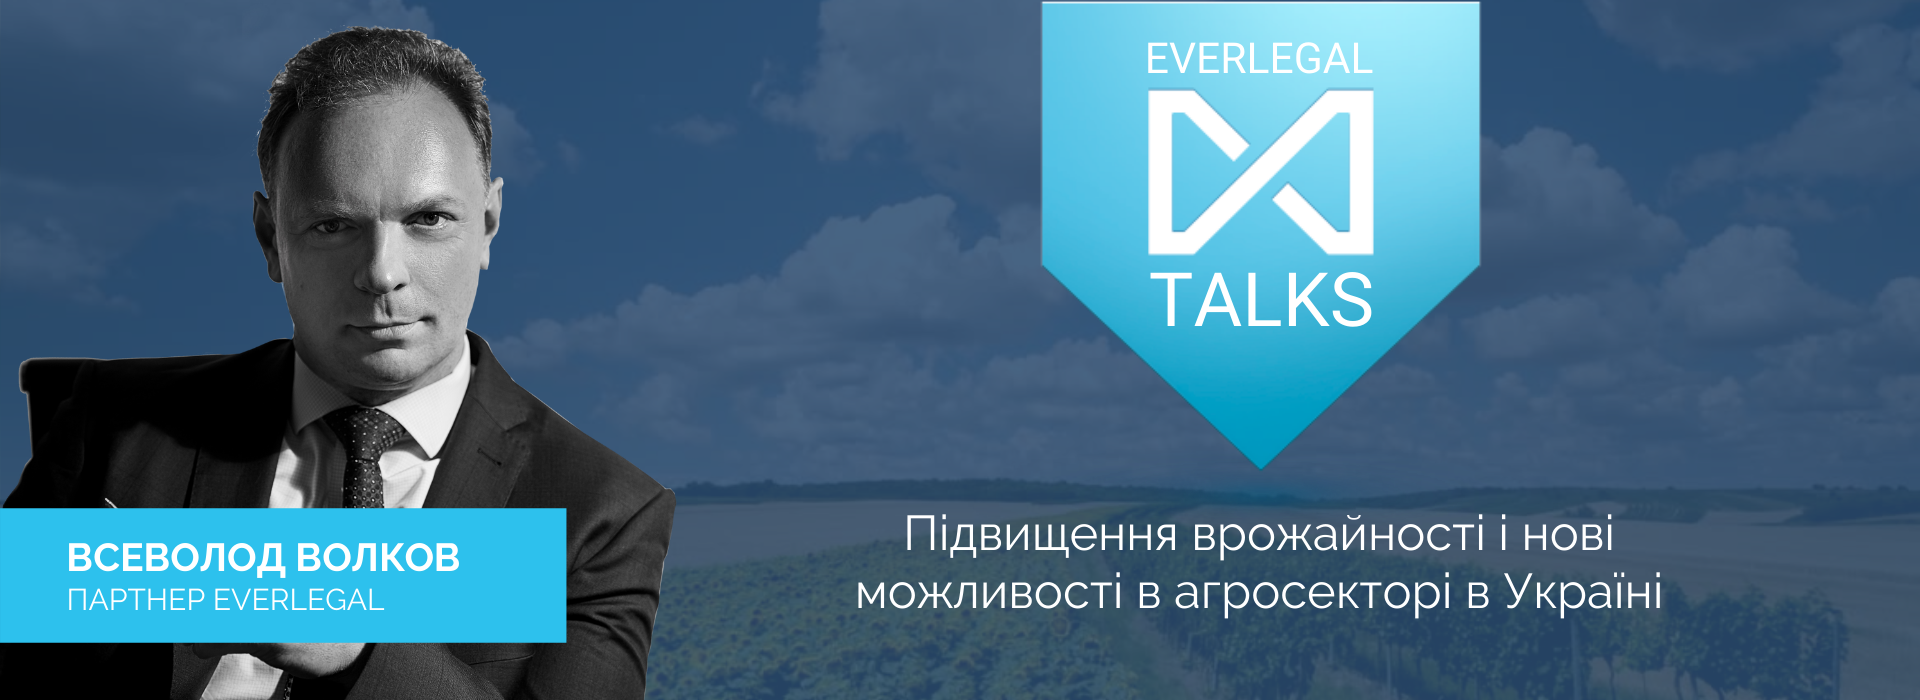 EverlegalTalks із Всеволодом Волковим – підвищення врожайності і нові можливості в агросекторі в Україні